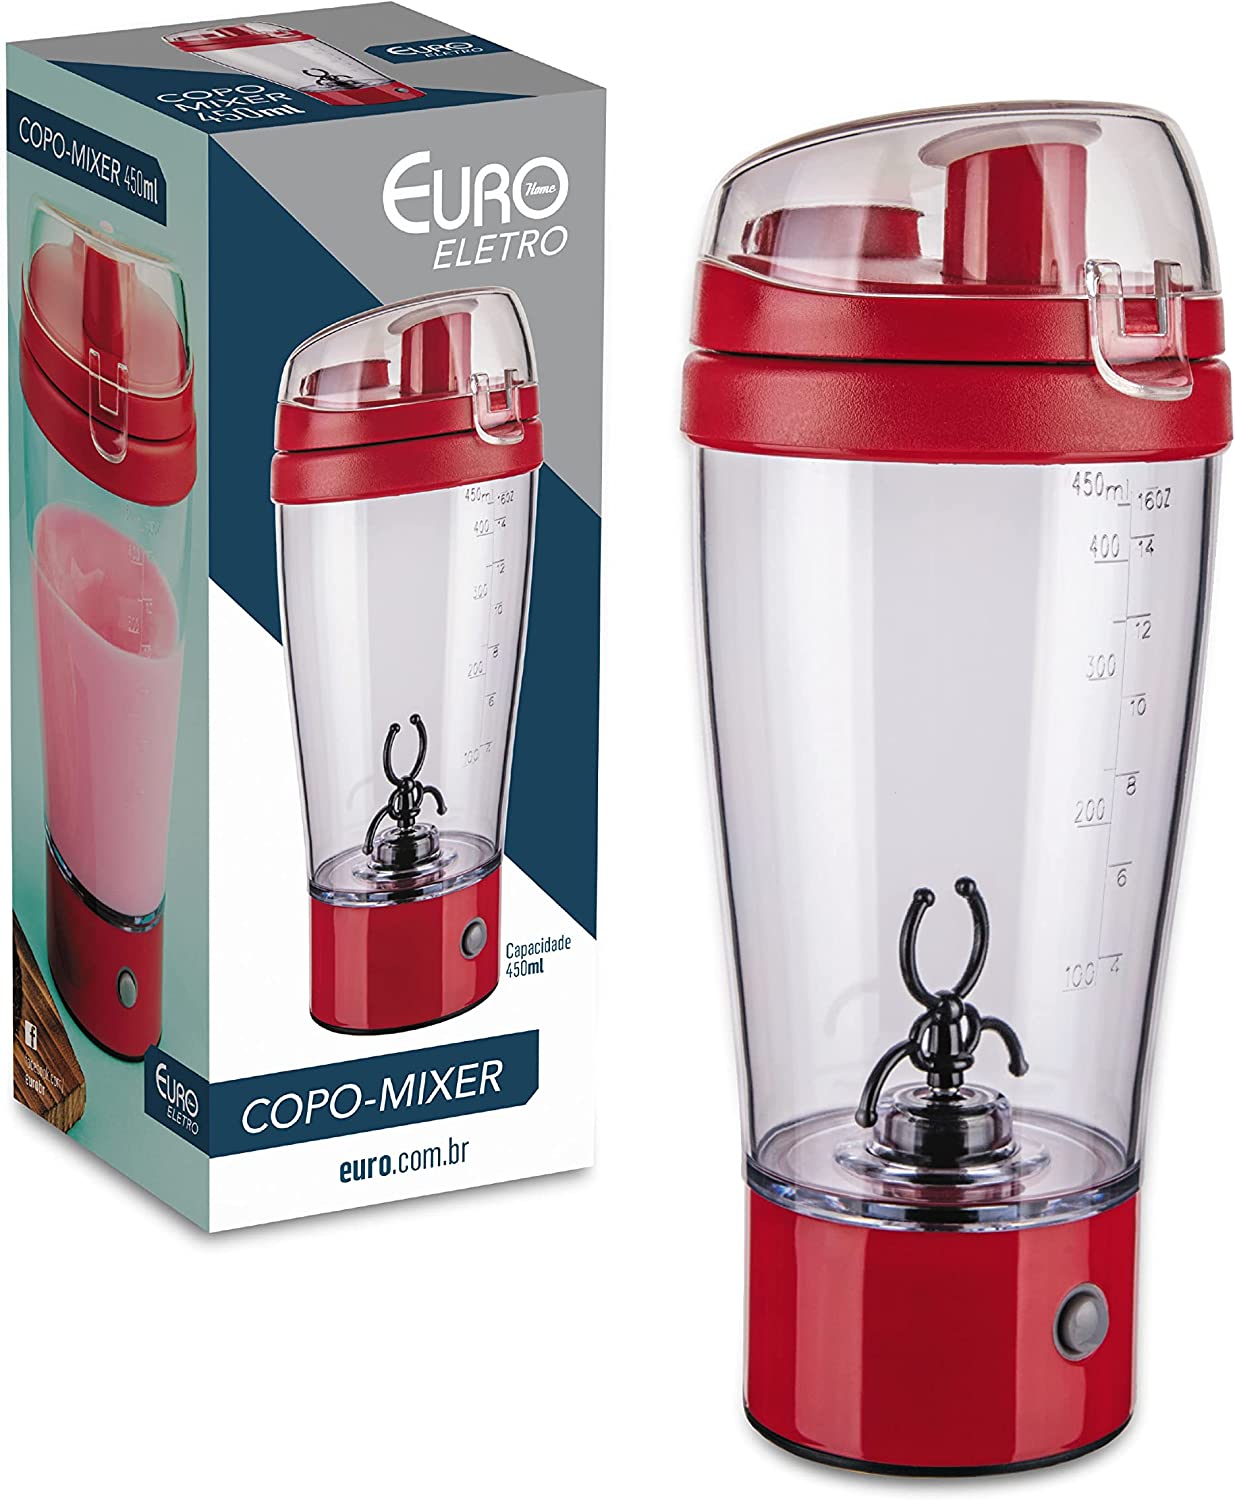 Mixer Shake à Pilha com Copo,MIX6552-VM, Euro Home